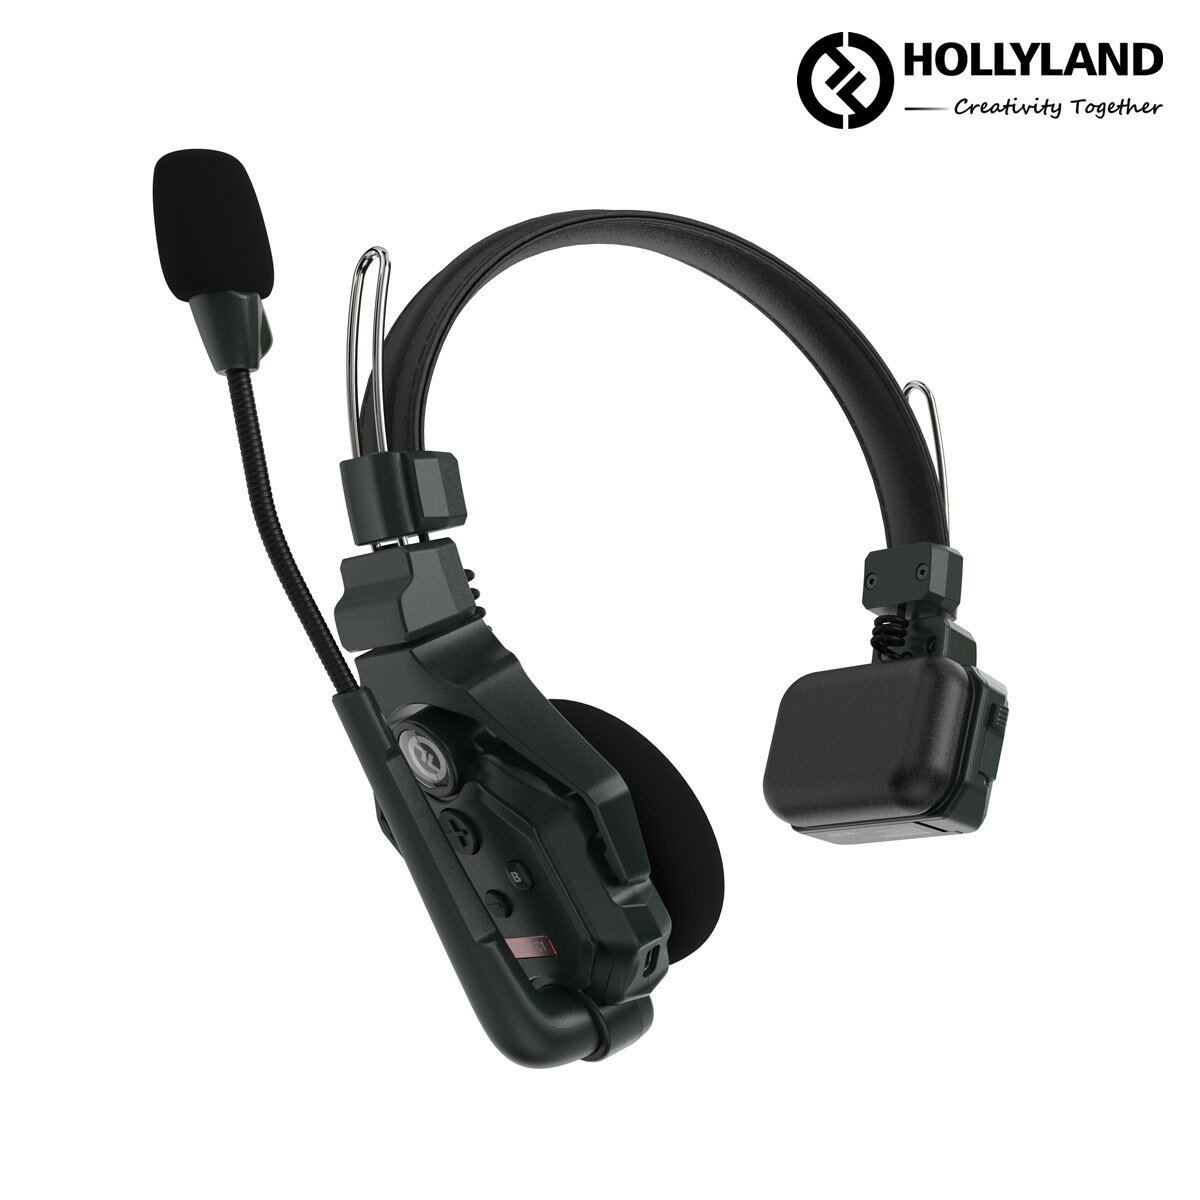 Hollyland Solidcom C1 ワイヤレスインカム マスターヘッドセット バッテリー2個付き Solidcom C1 マスターヘッドセット 小型軽量ヘッドセット 設定不要 箱から出してすぐに使える同時通話システム